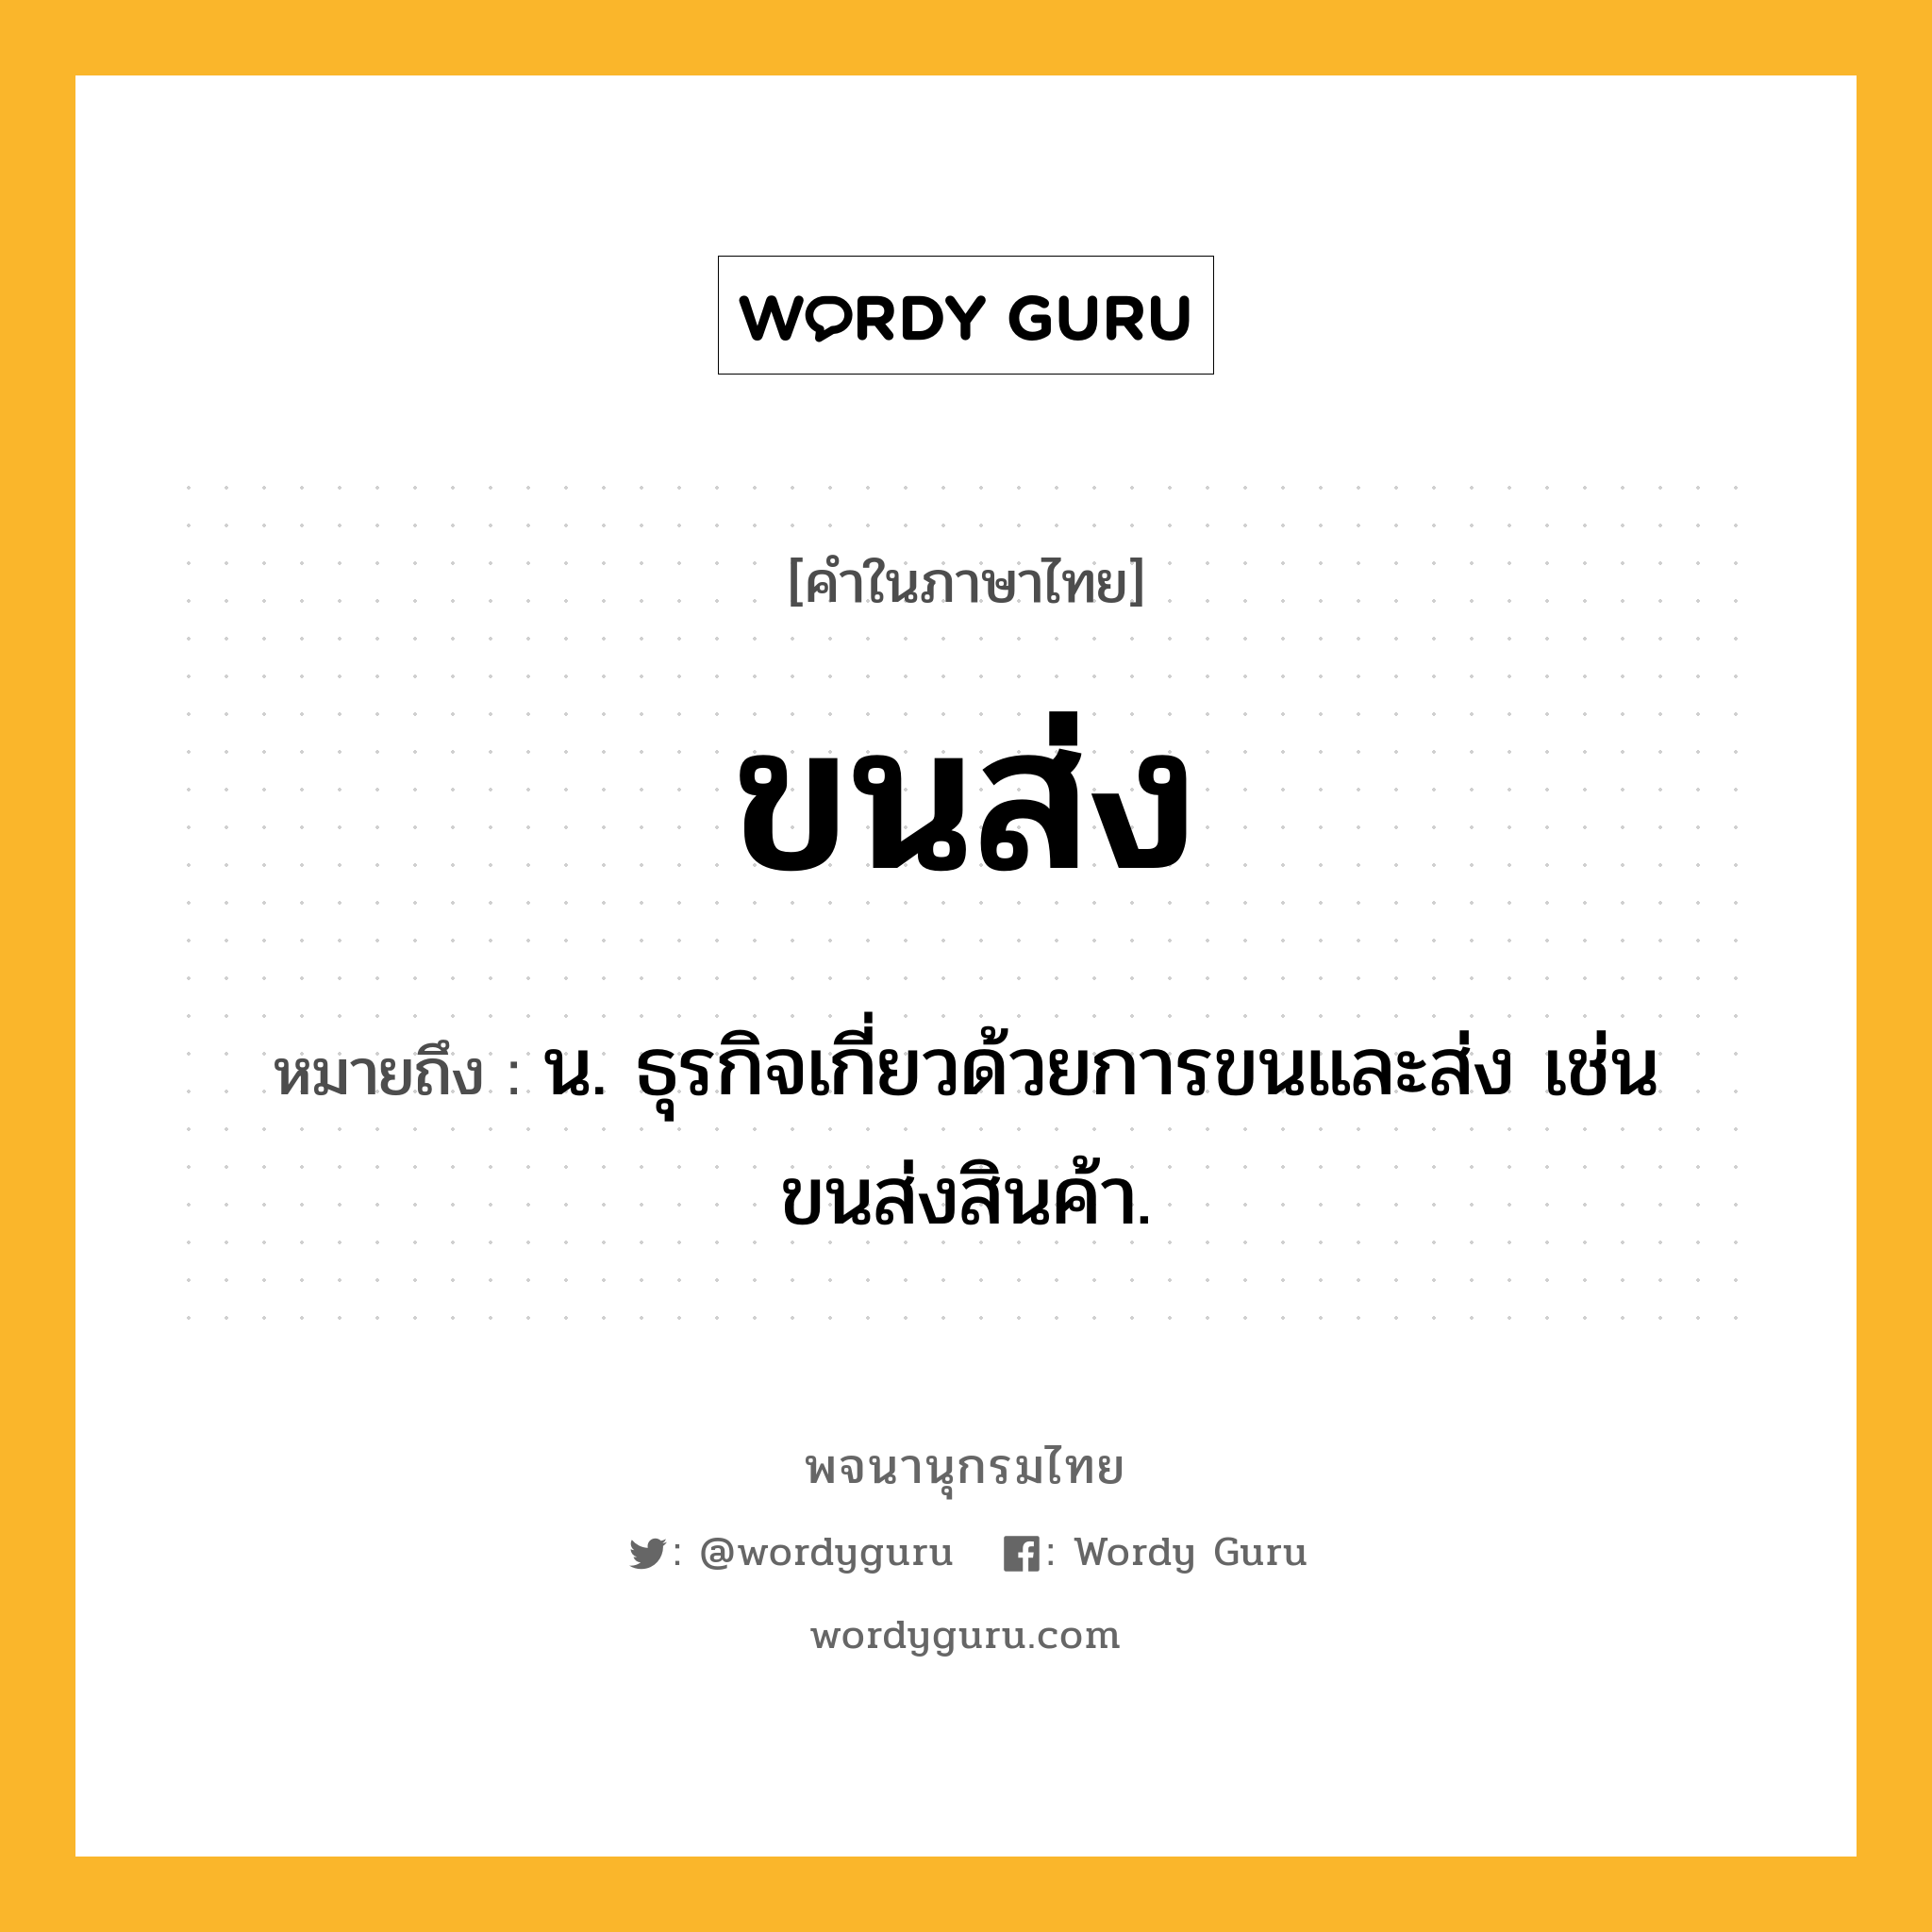 ขนส่ง หมายถึงอะไร?, คำในภาษาไทย ขนส่ง หมายถึง น. ธุรกิจเกี่ยวด้วยการขนและส่ง เช่น ขนส่งสินค้า.